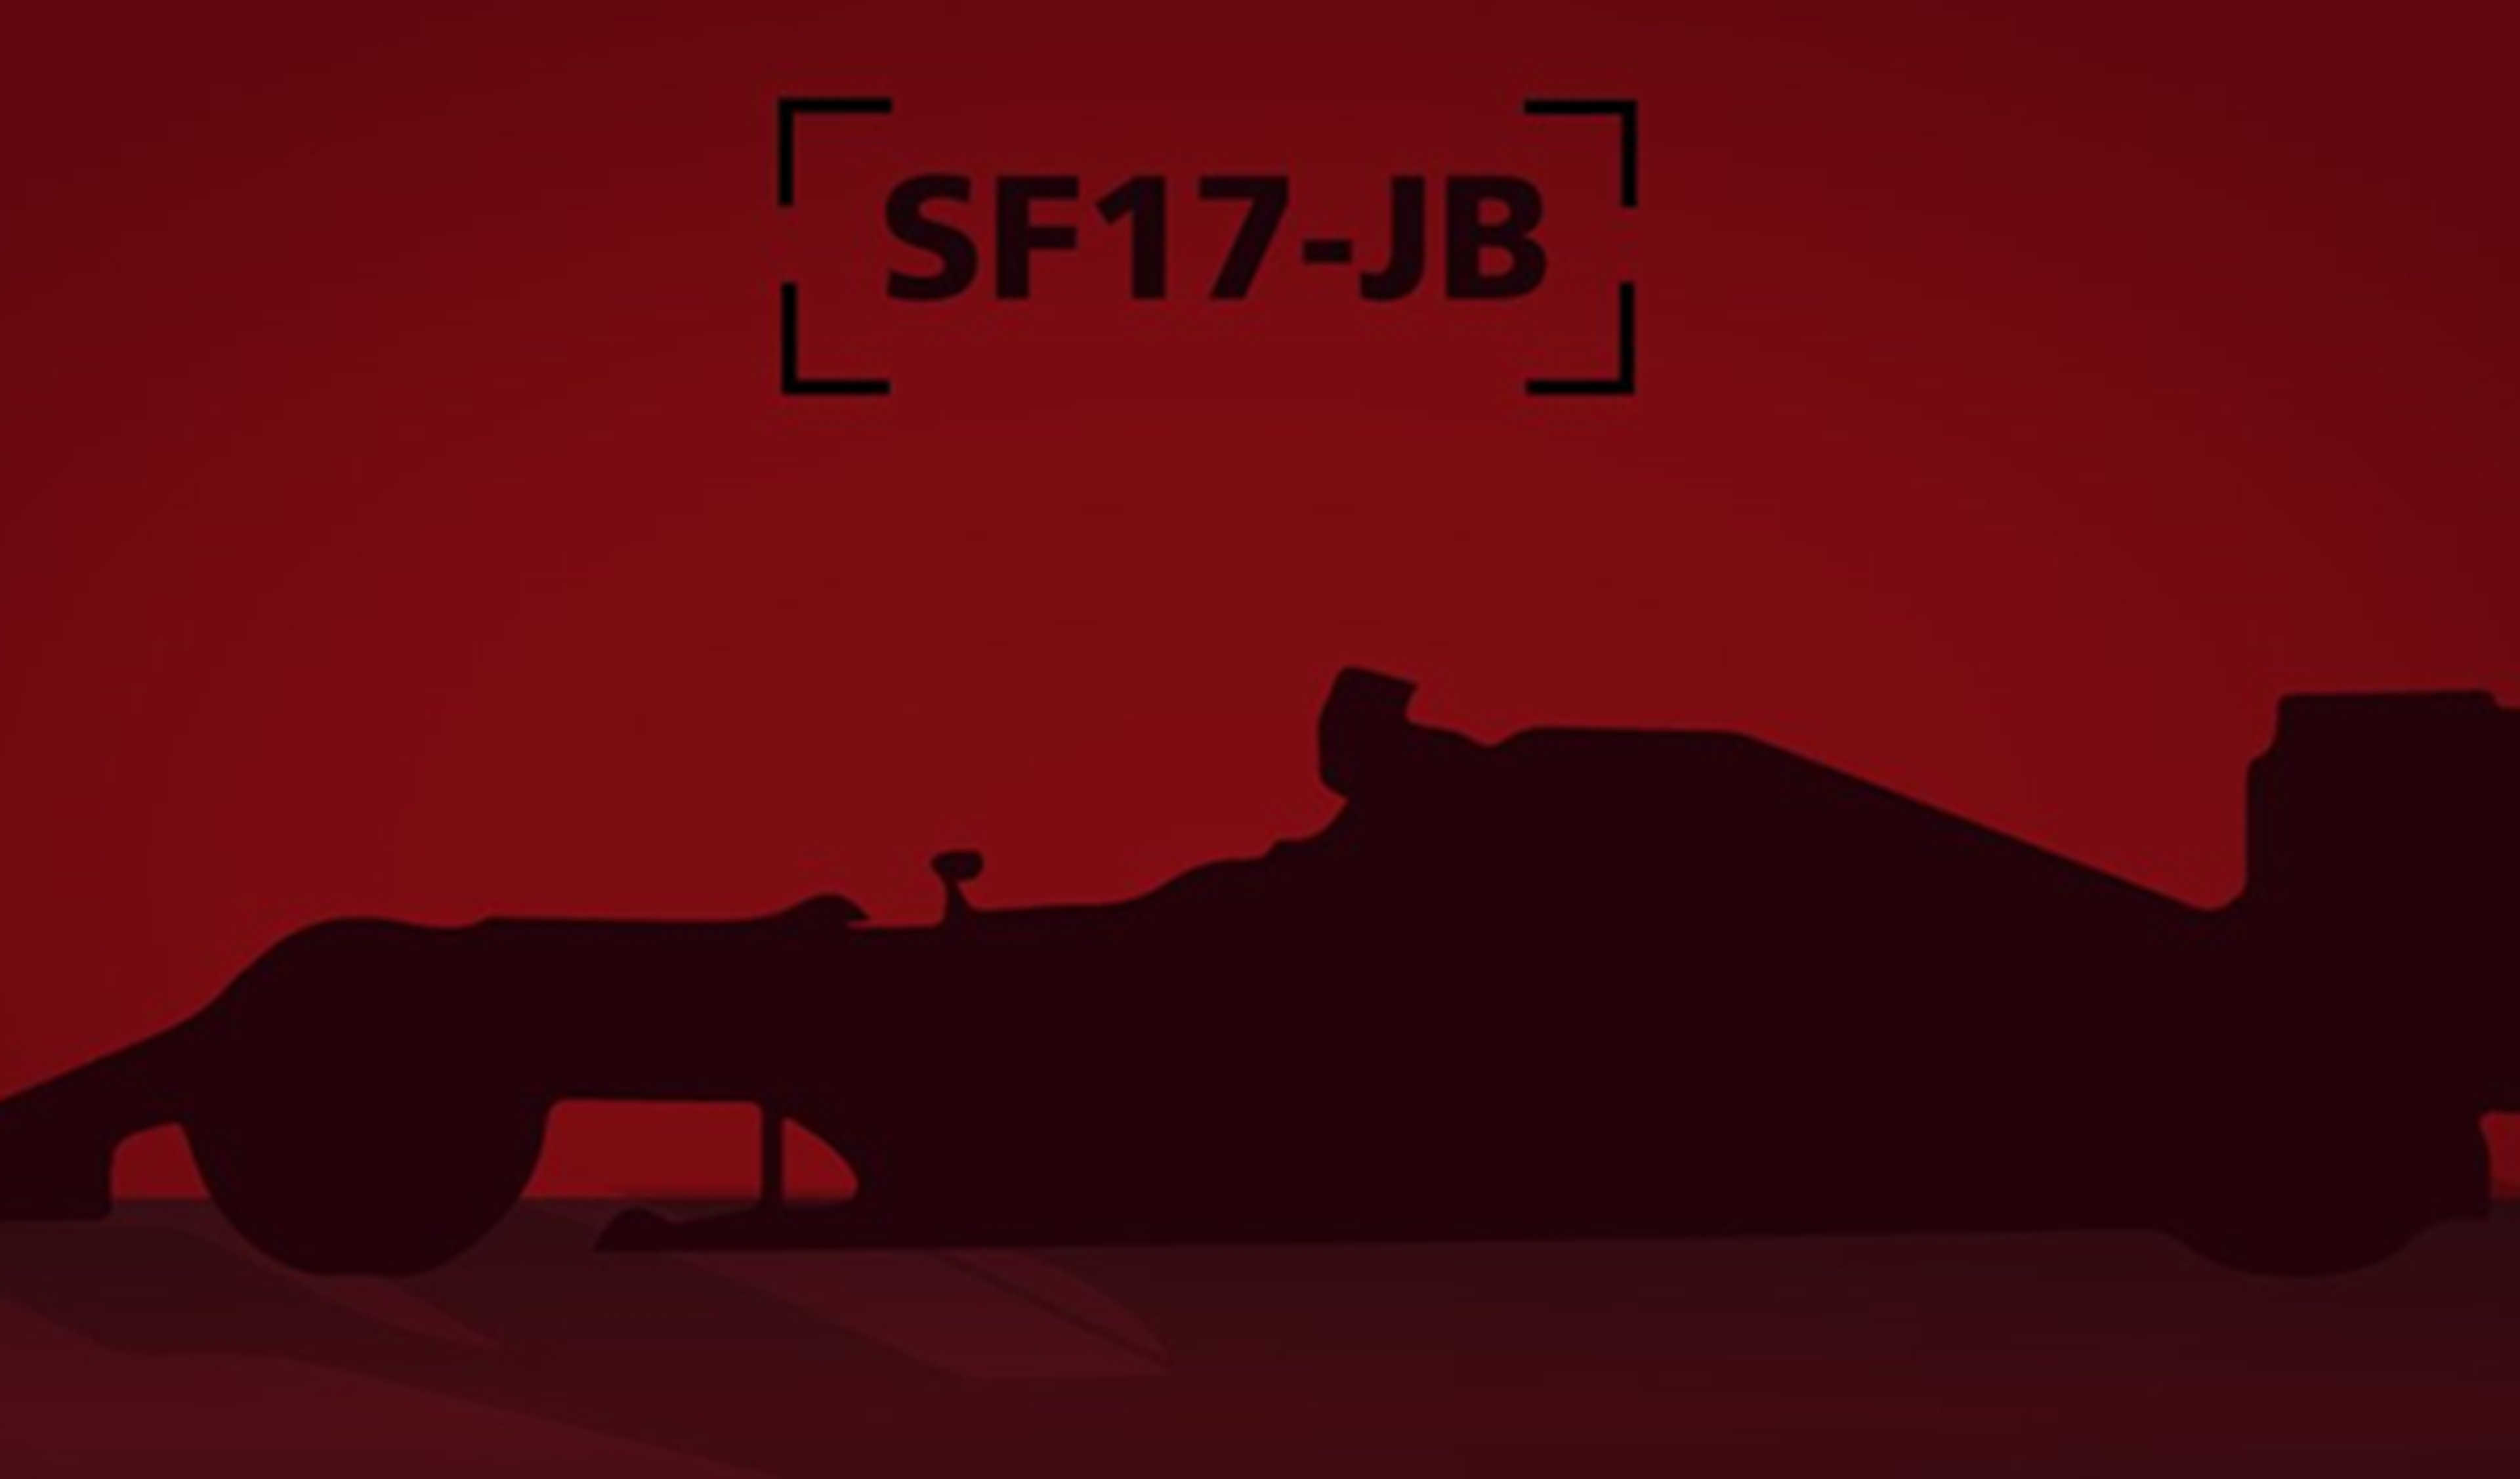 Ferrari SF17JB Jules Bianchi